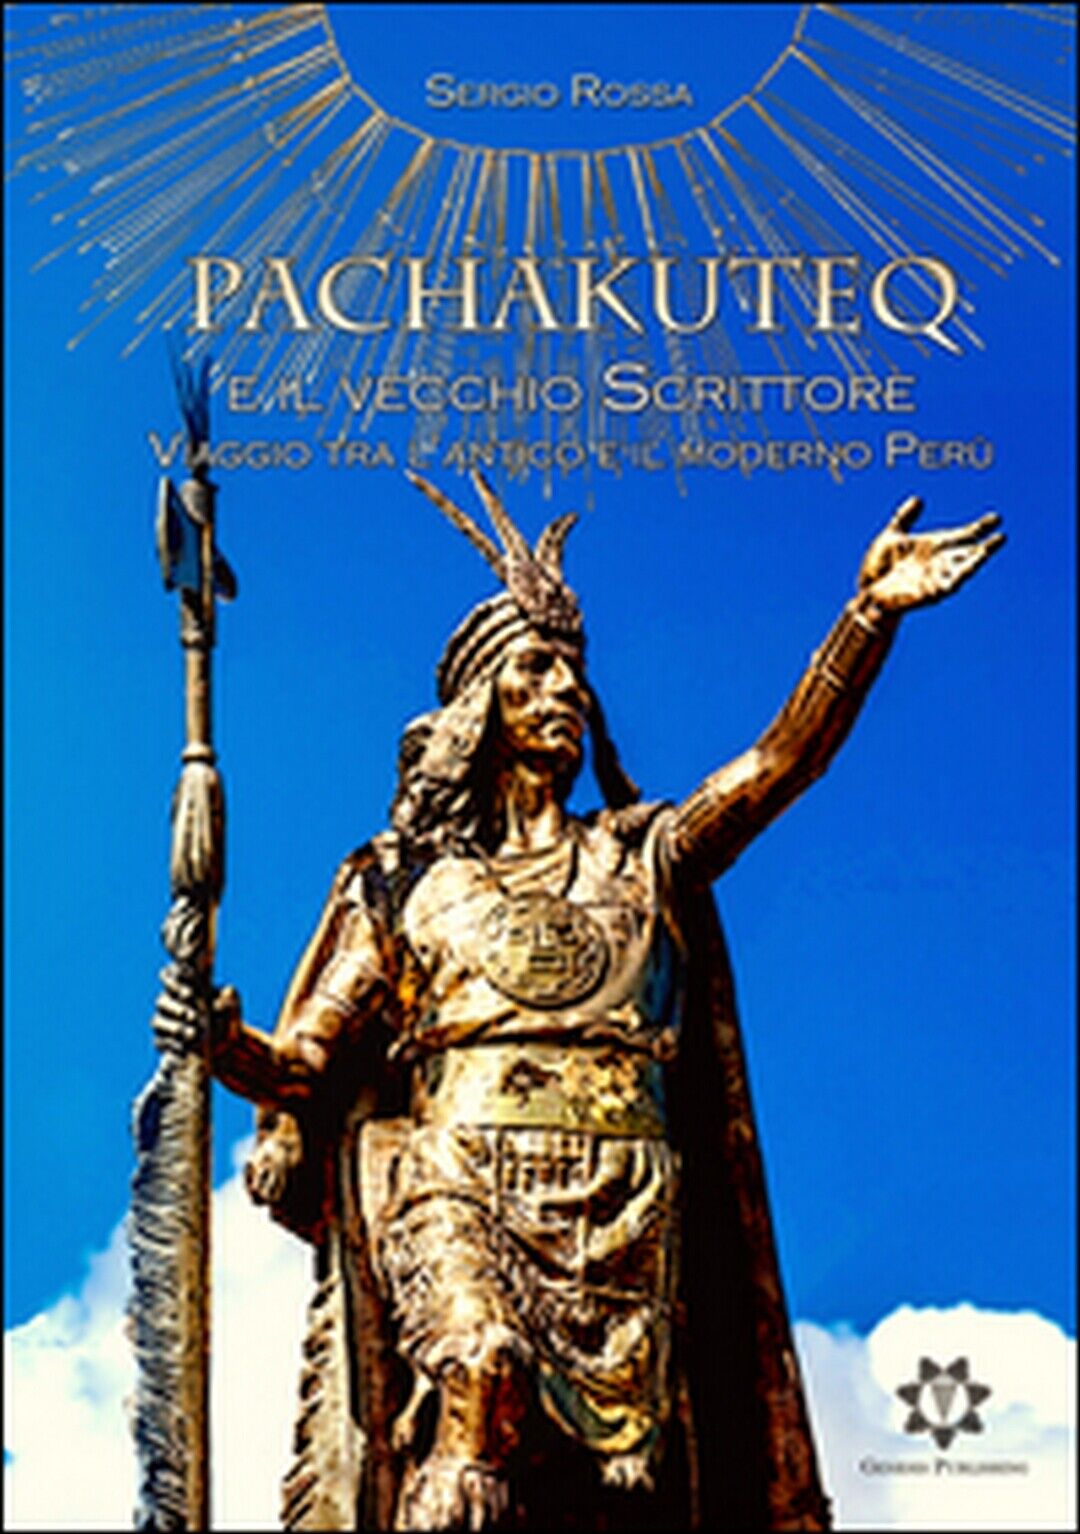 Pachakuteq e il vecchio scrittore. Viaggio tra L'antico e il moderno Per?